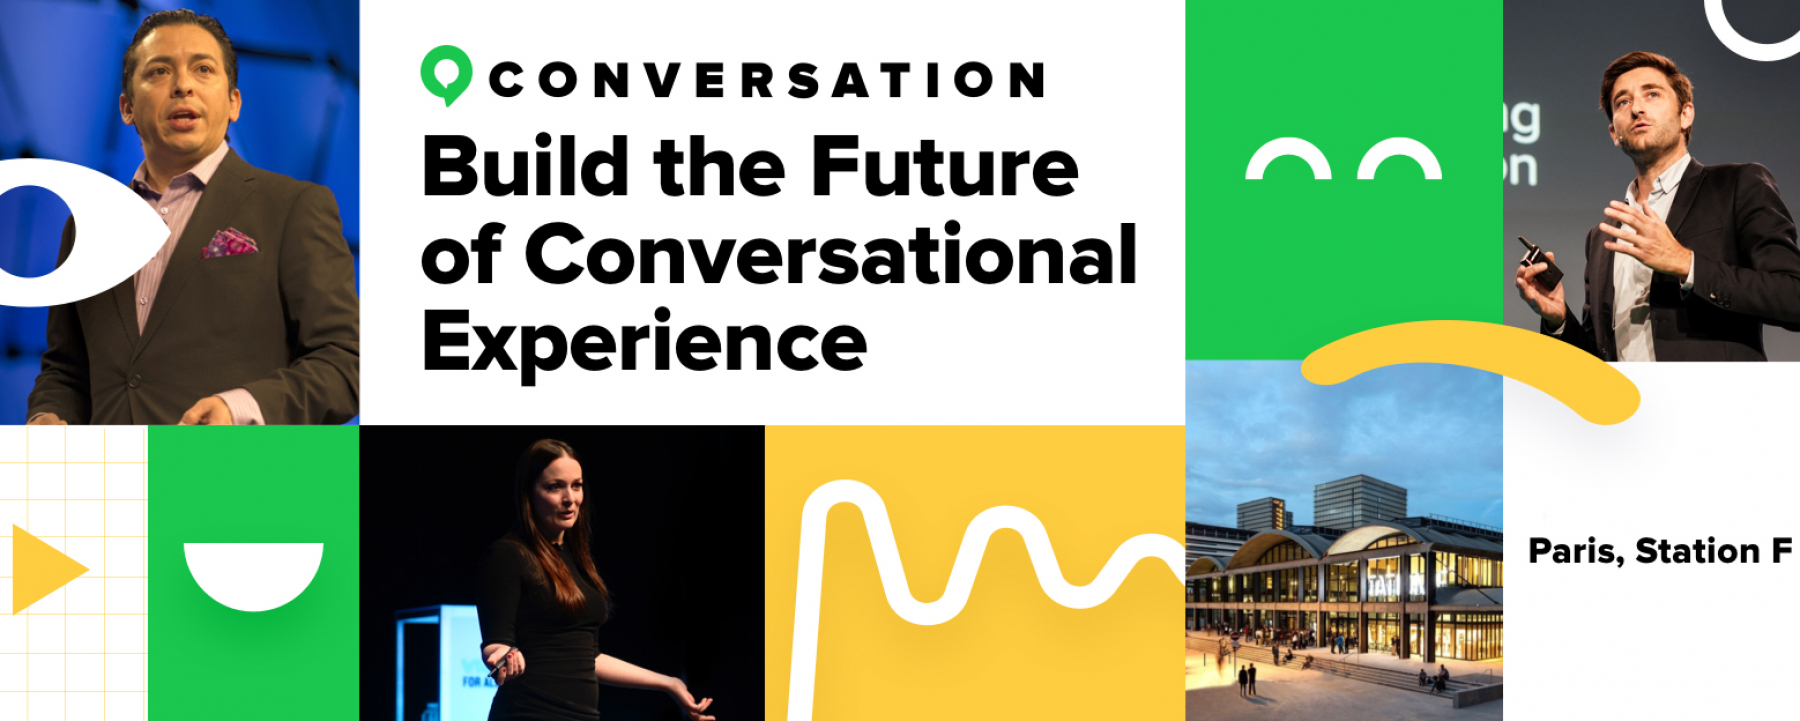 Événement Conversation 2020, à Station F, organisé par iAdvize, reporté le 29 septembre